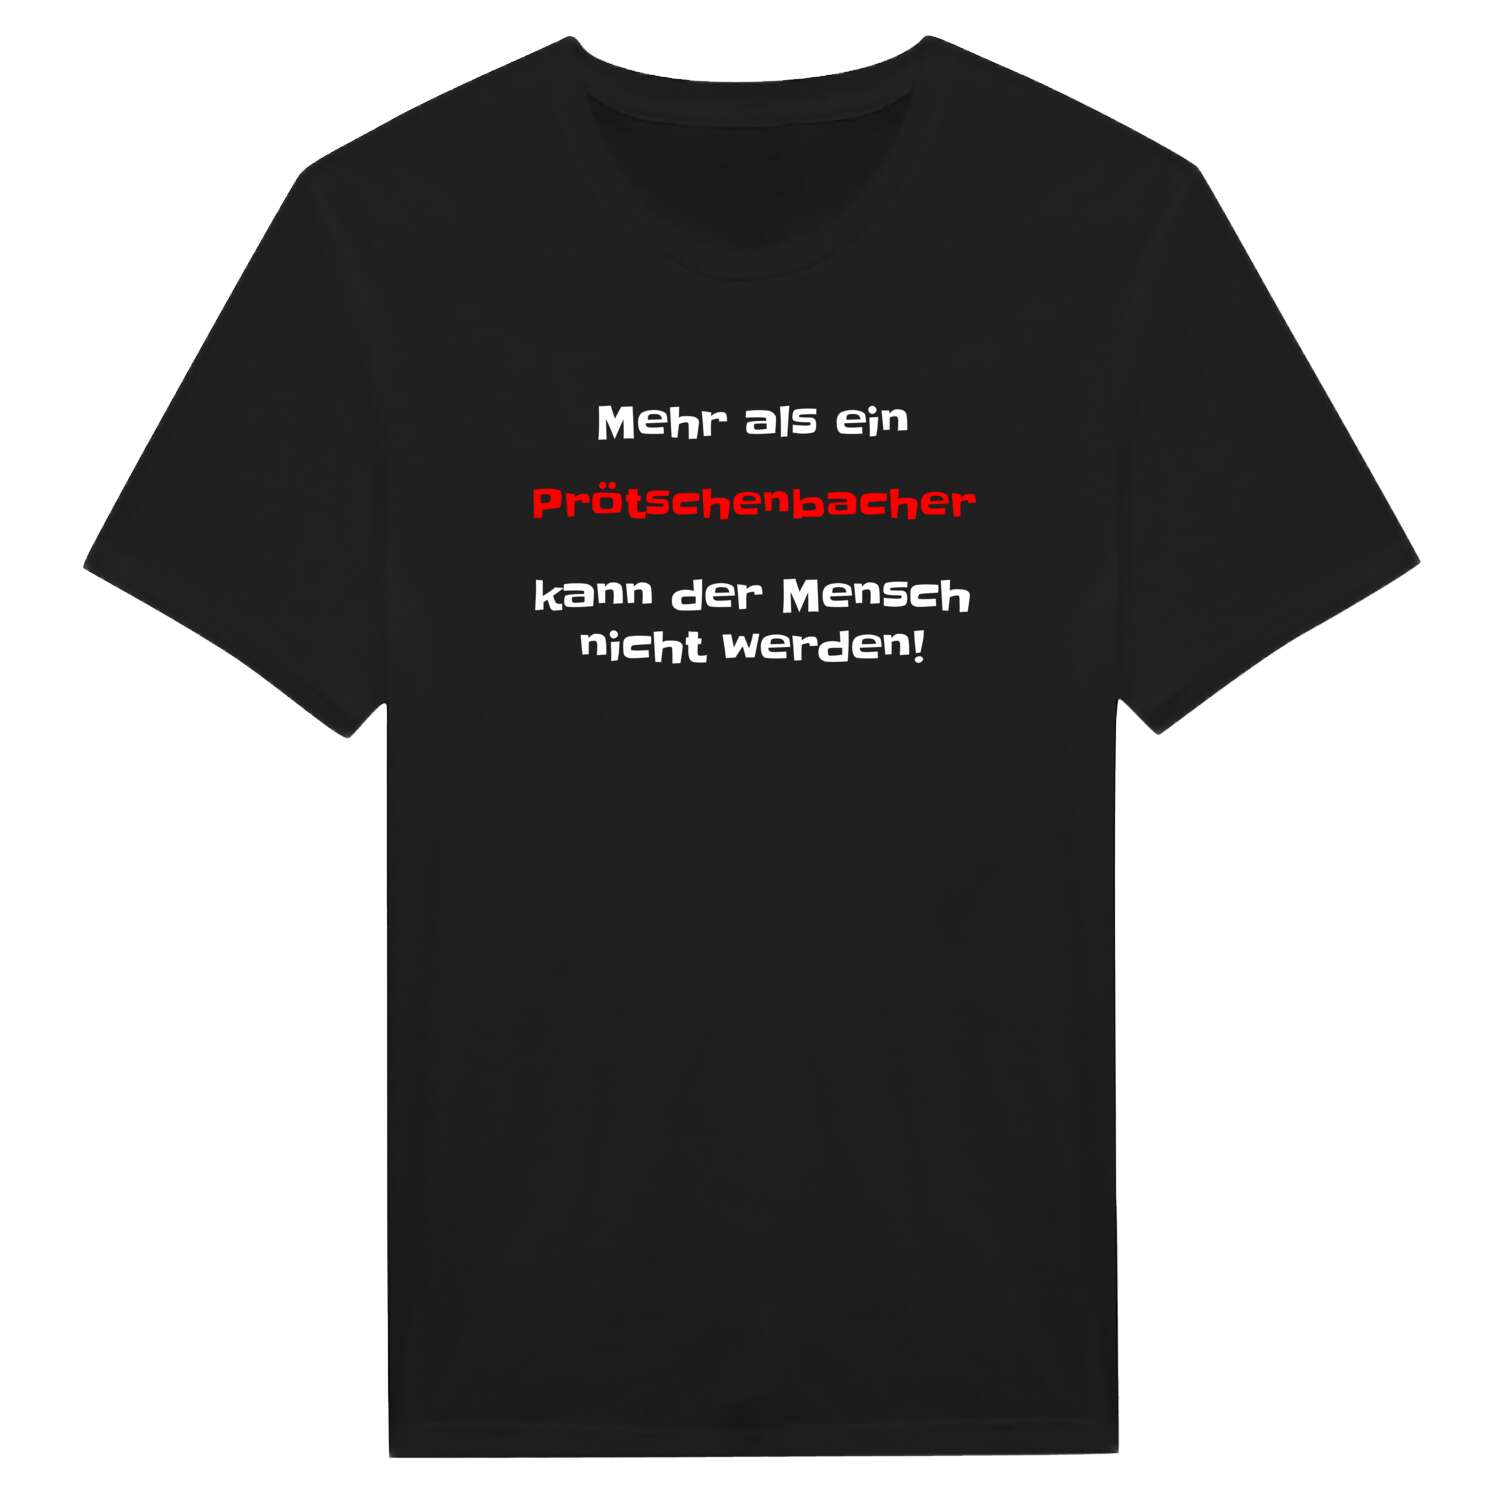 Prötschenbach T-Shirt »Mehr als ein«